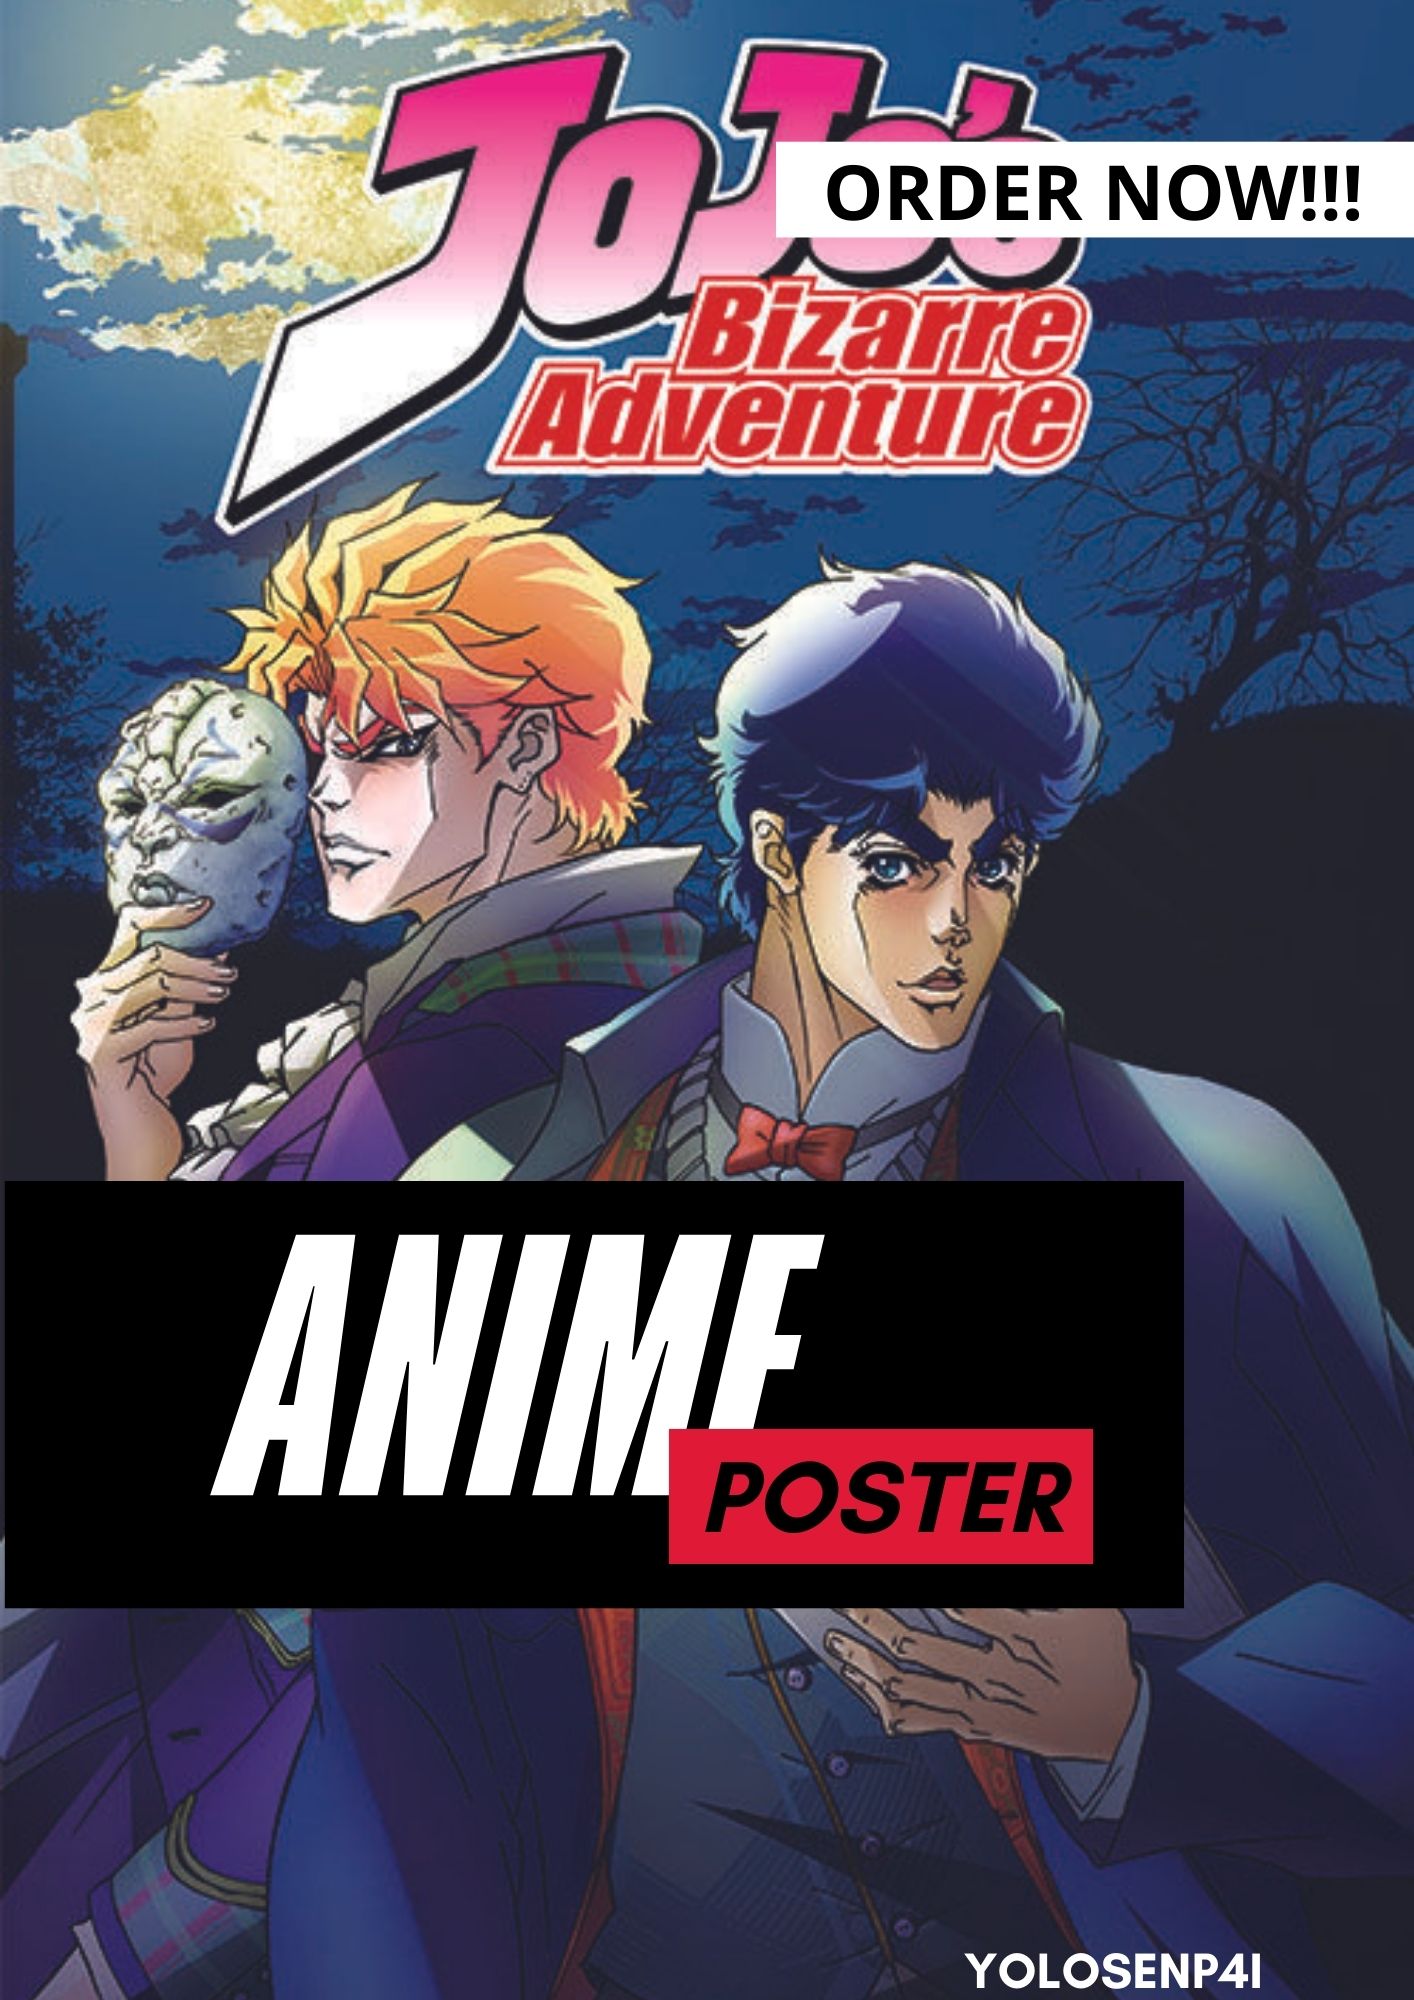 JoJo Bizarre Adventure anime poster (2PCS MINIMUM PER ORDER) | Lazada PH